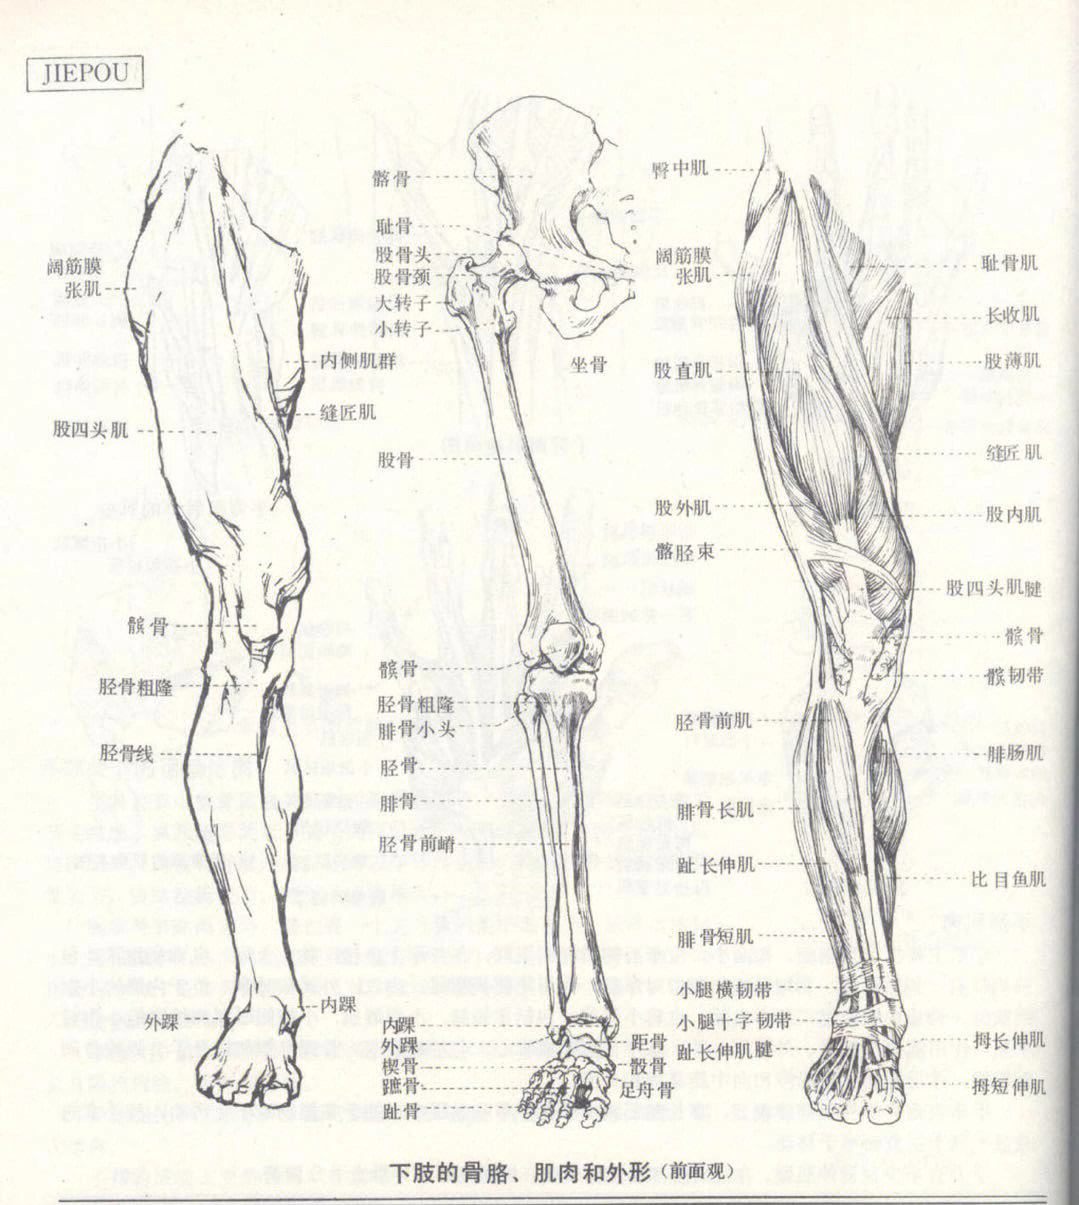 人体速写腿部骨骼肌肉77特征体块细节分析